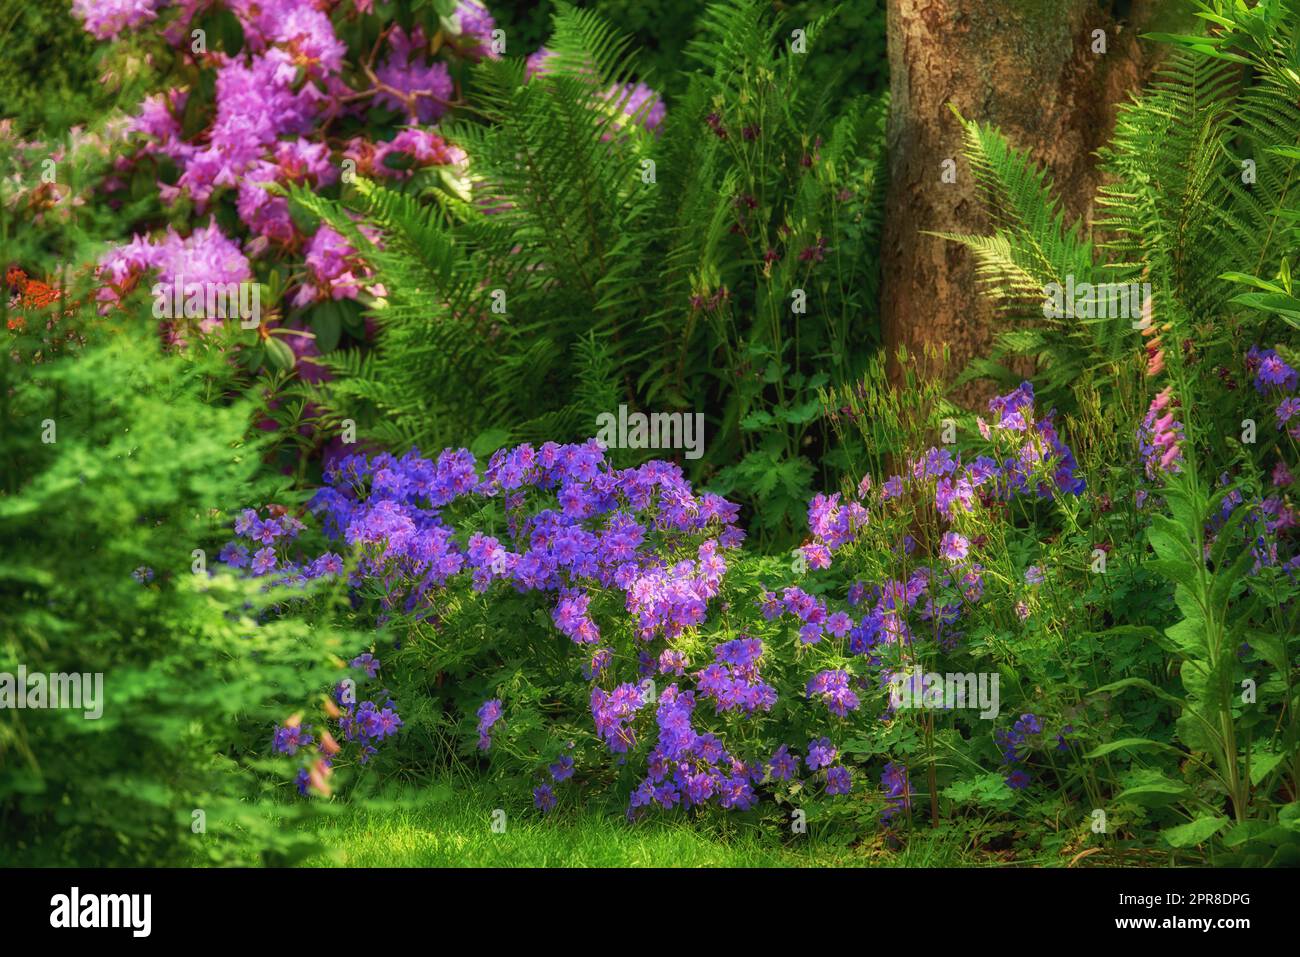 Vivaci clematis e fiori rosa di columbine che crescono in un giardino privato panoramico e lussureggiante. Piante botaniche, cespugli, arbusti, felci, flora e alberi in un cortile. Sereno, zen, pacifico e tranquillo Foto Stock